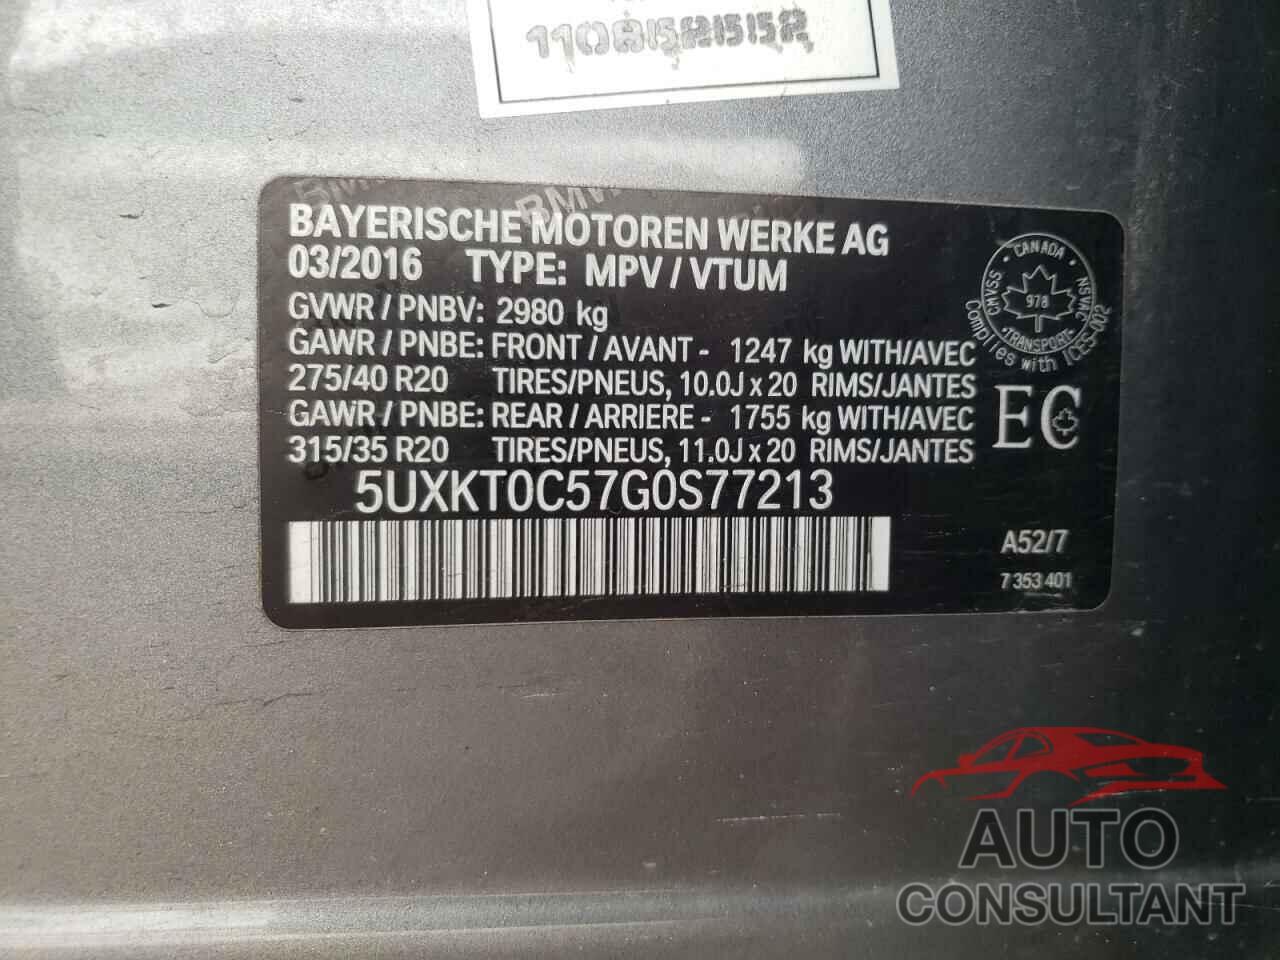 BMW X5 2016 - 5UXKT0C57G0S77213